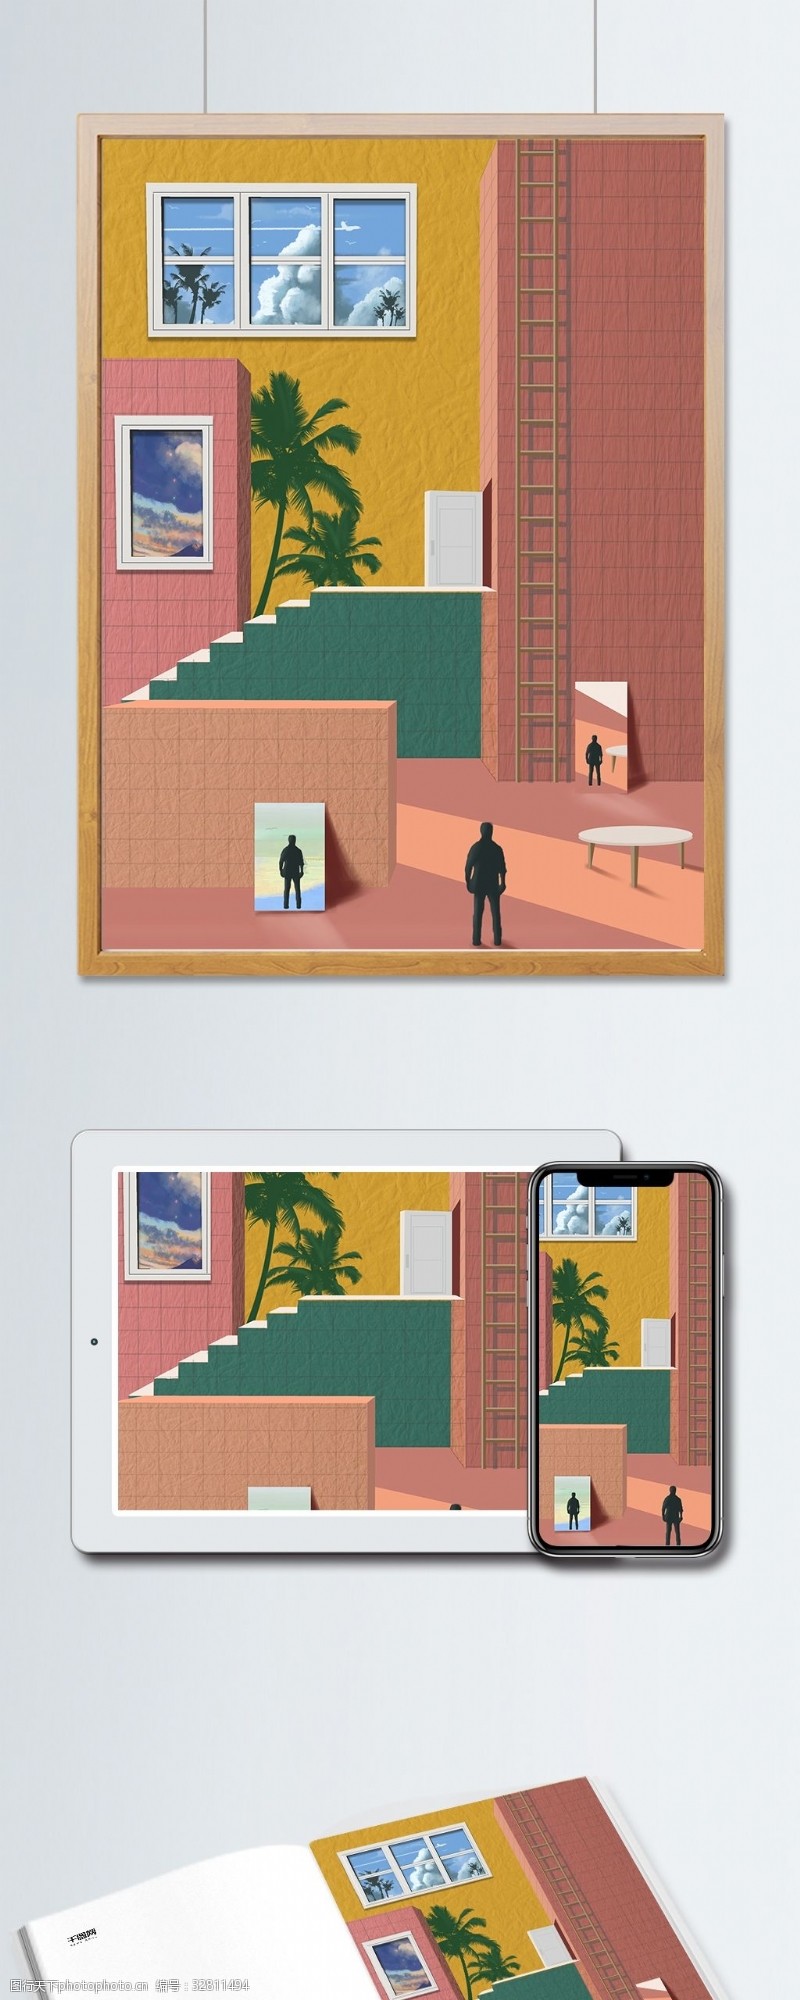 文章配图3D色界现实与幻想空间居家生活室内装修